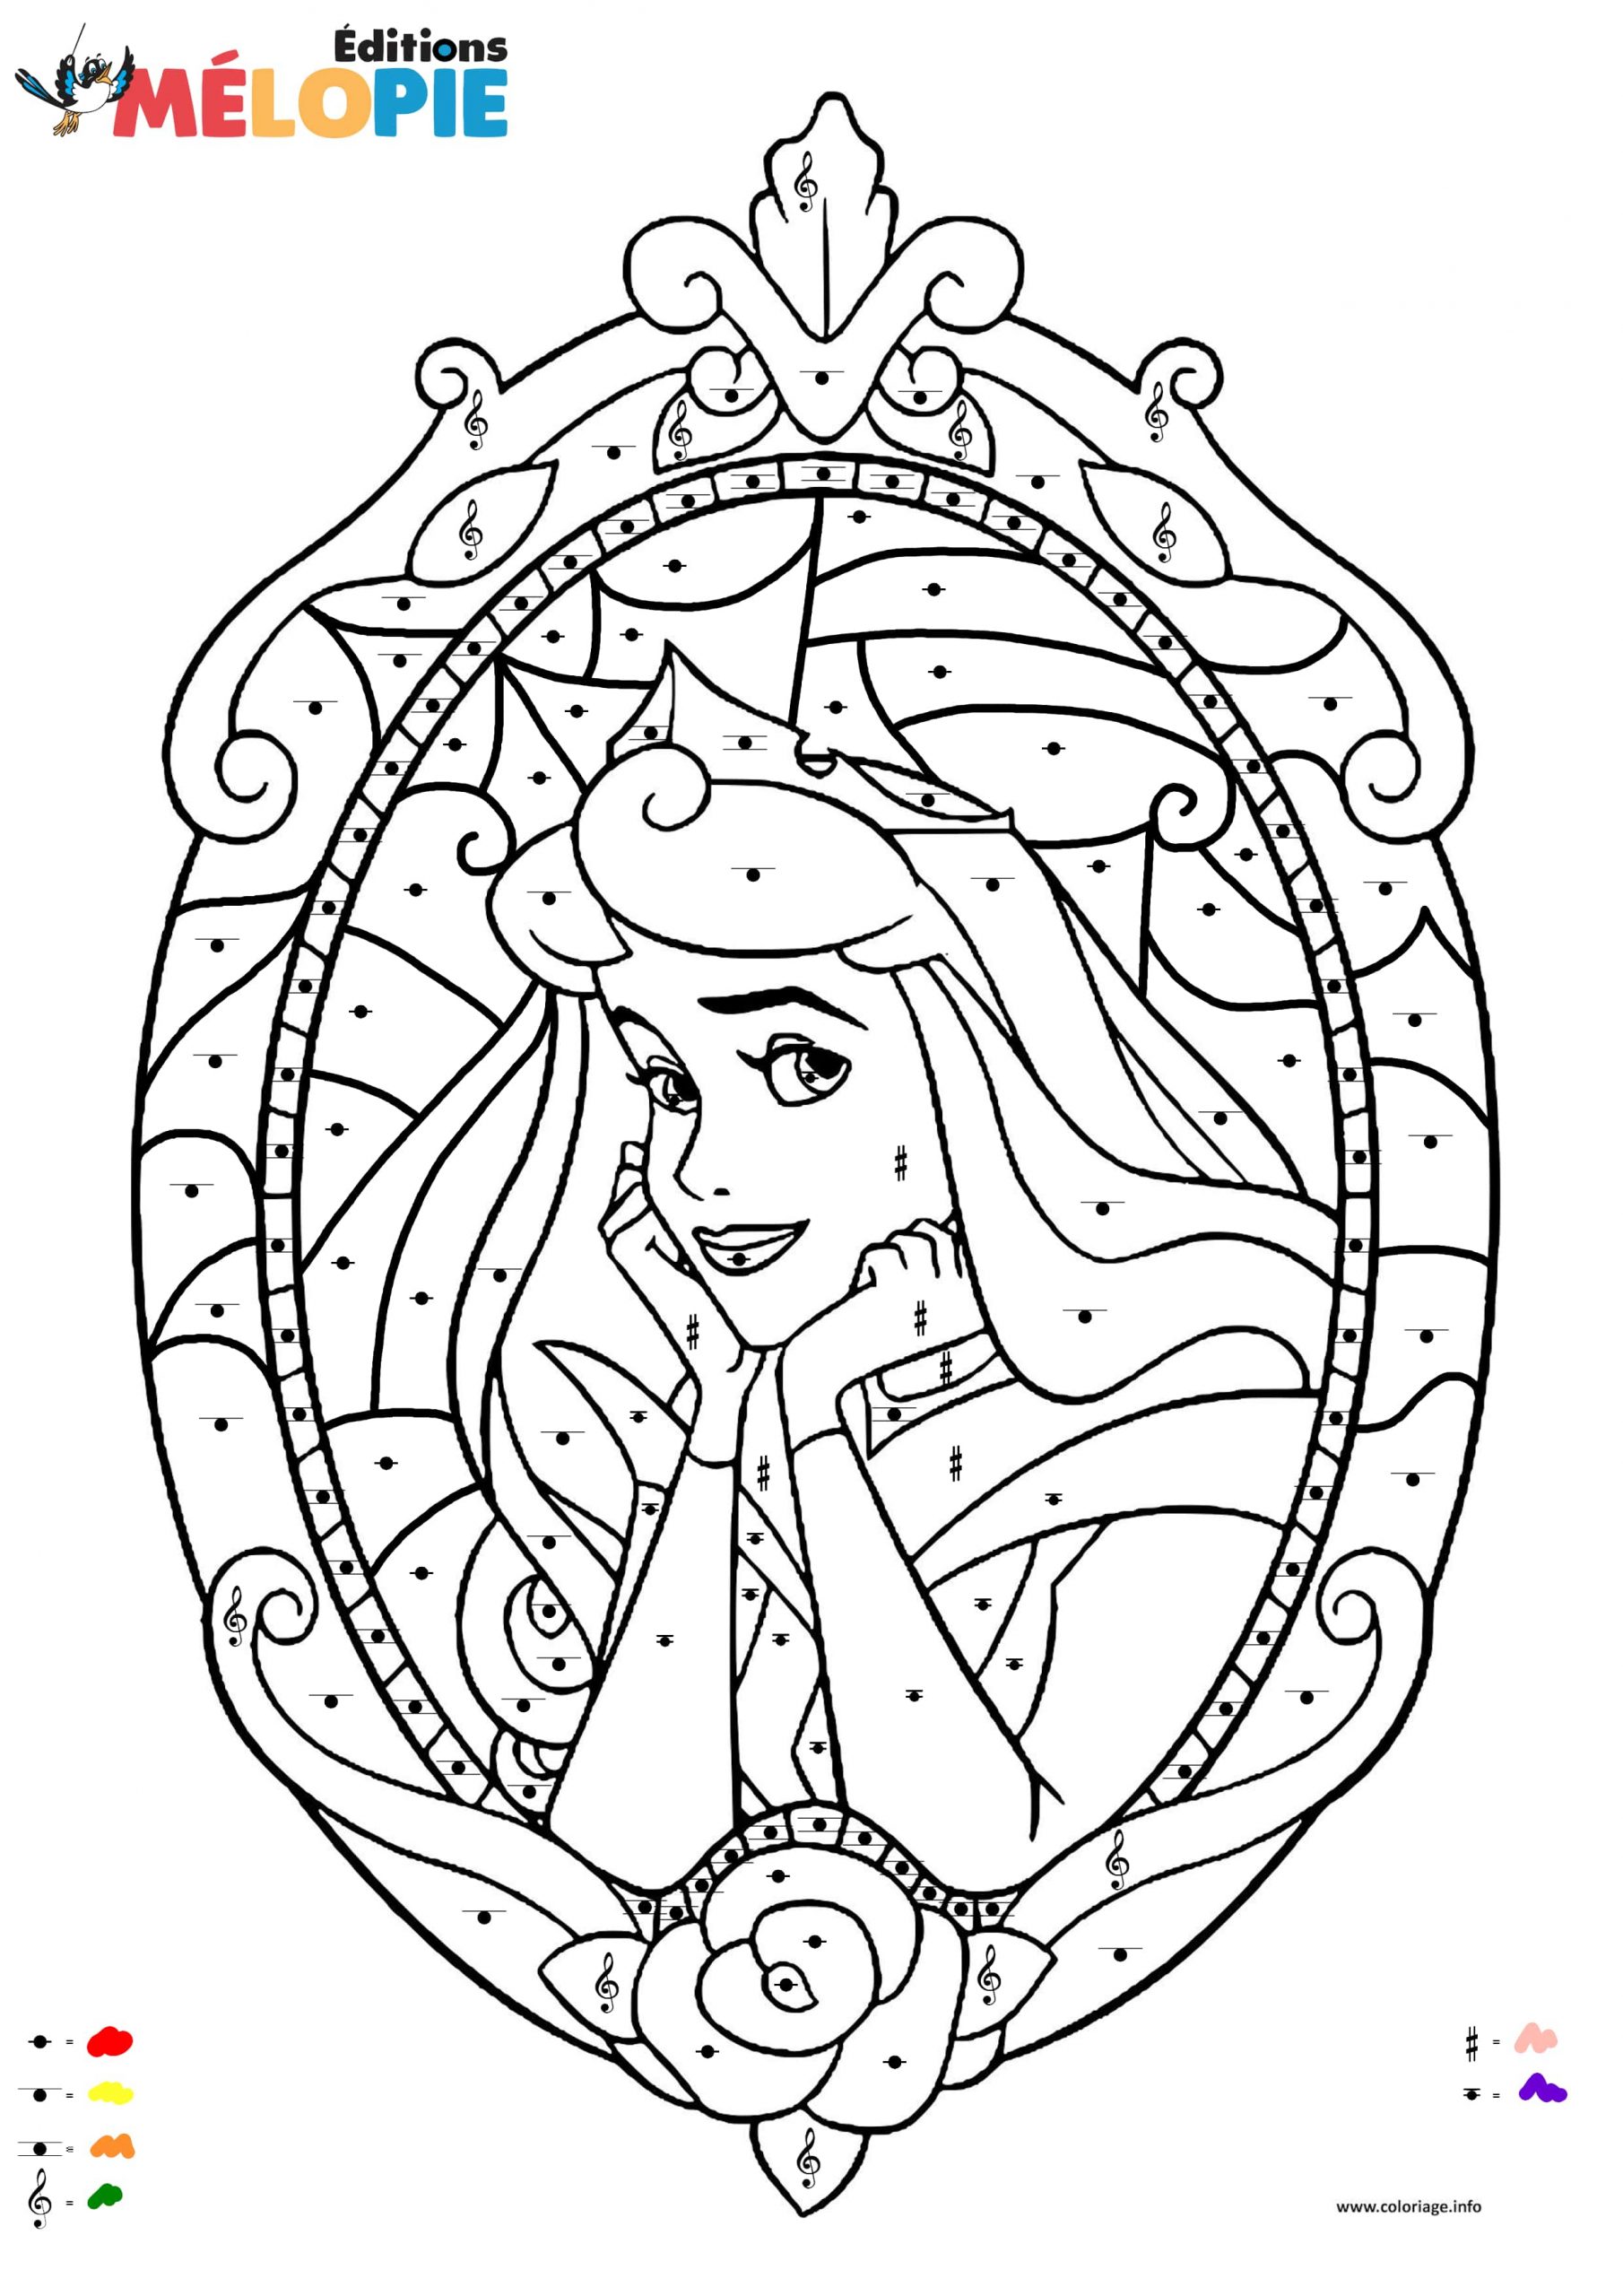 Télécharger Coloriage Magique Disney Images intérieur Coloriage Princesse Aurore À Imprimer